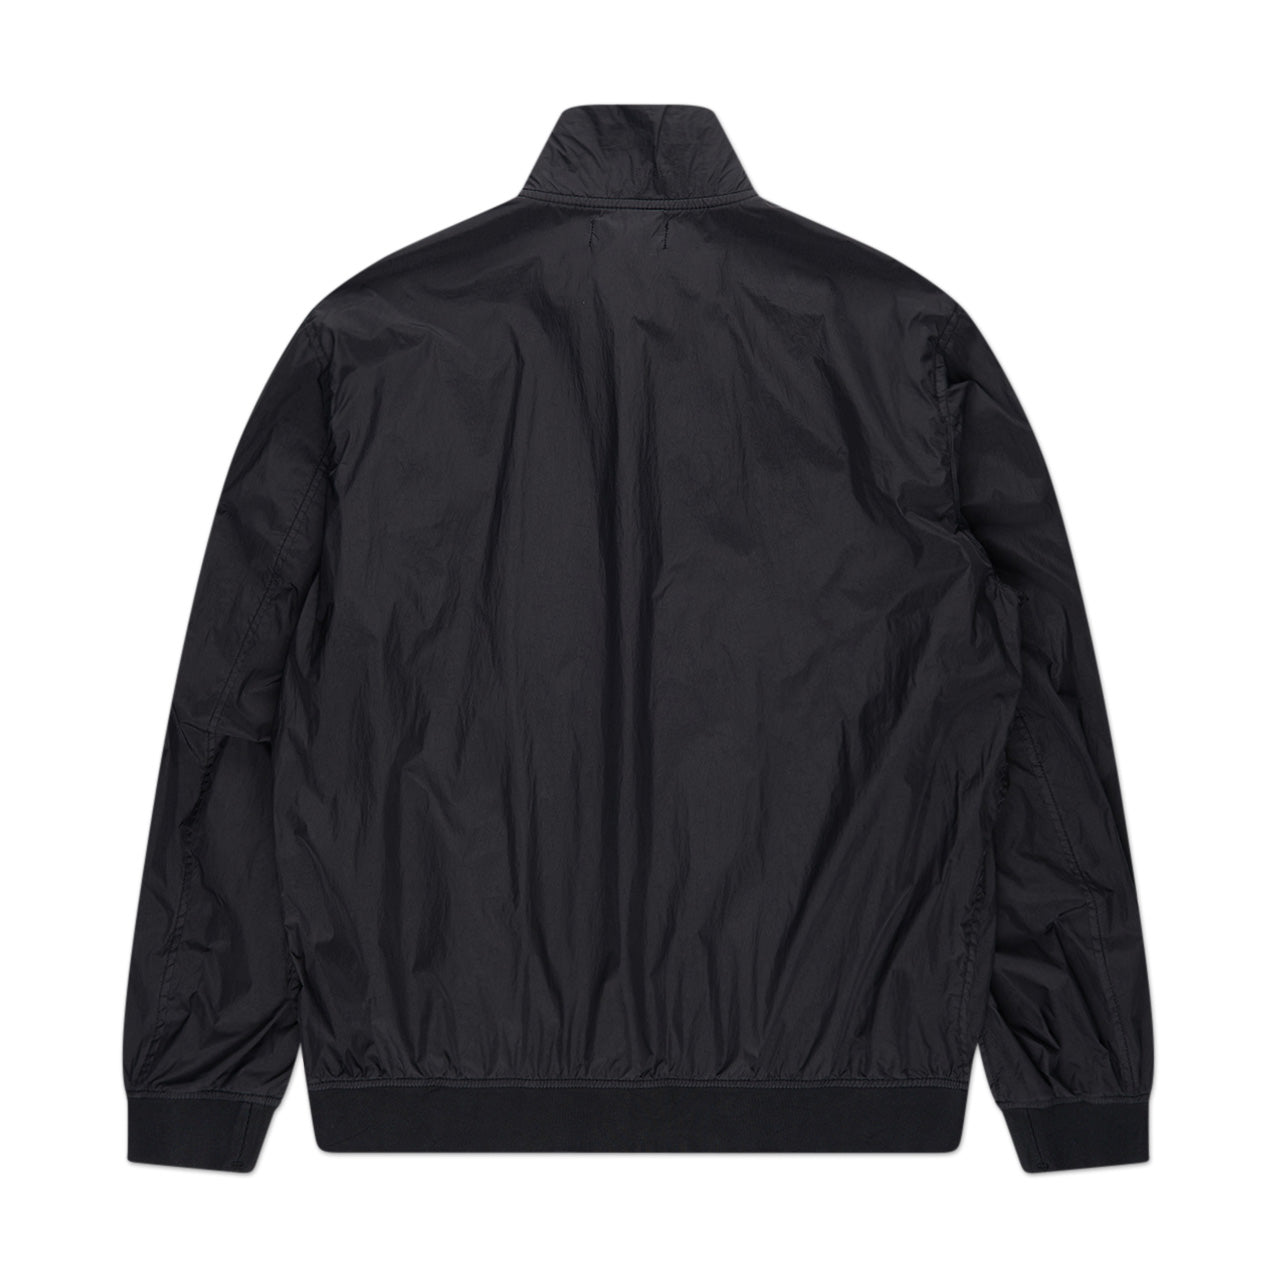 stone island jacket (black)